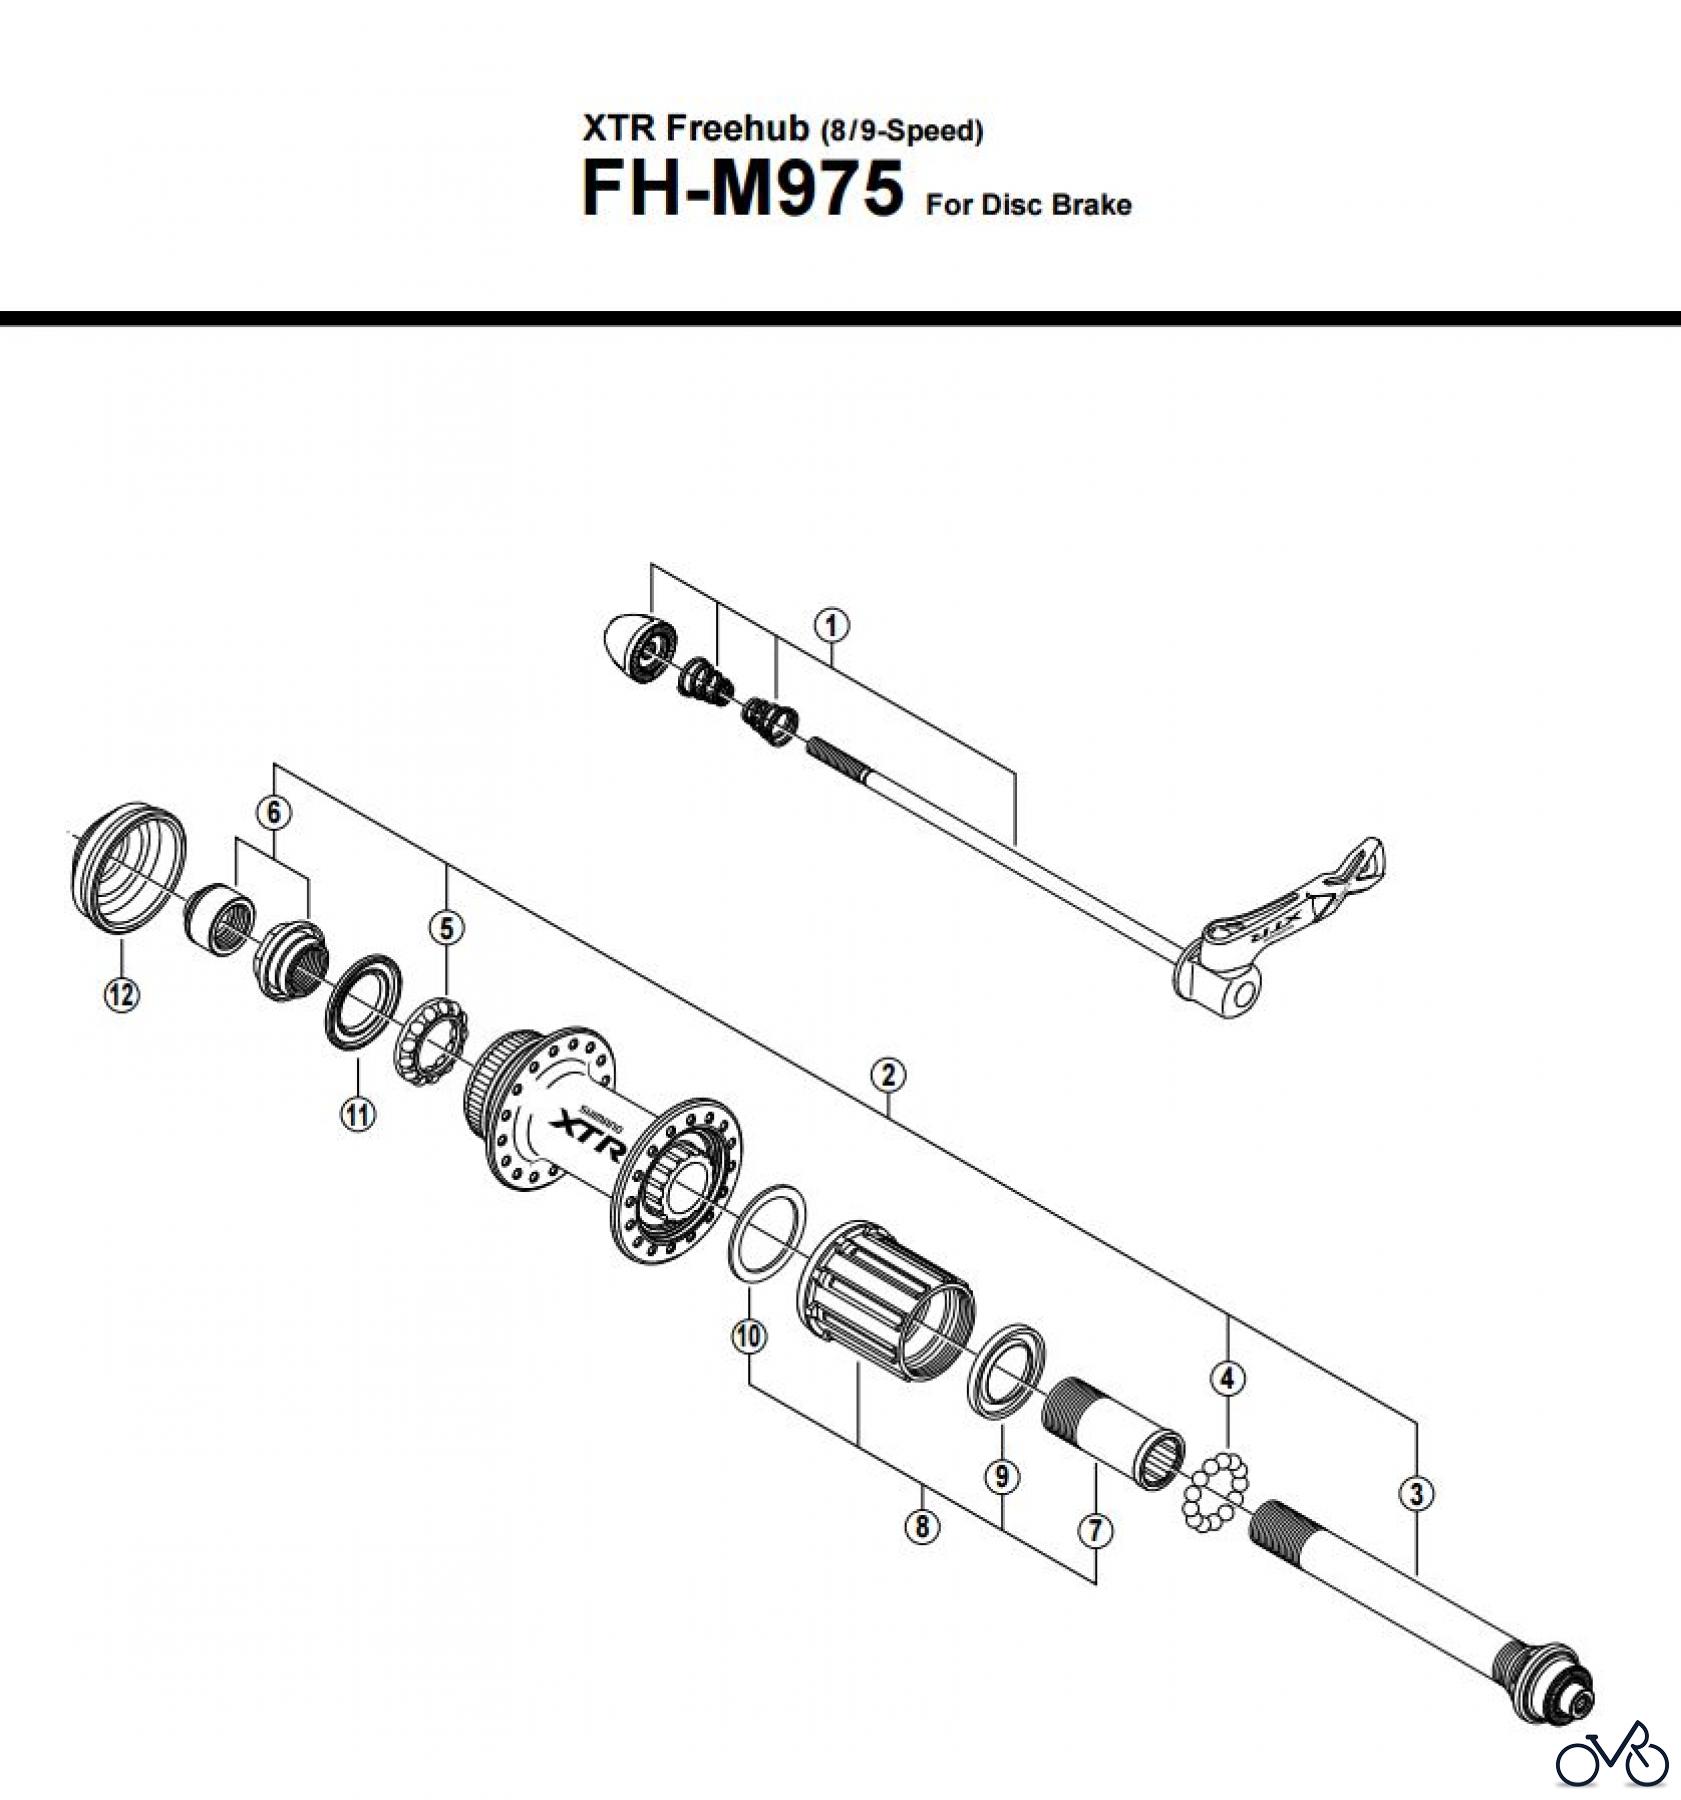  Shimano FH Free Hub - Freilaufnabe FH-M975 -2547 XTR Freehub (8/9-Speed)